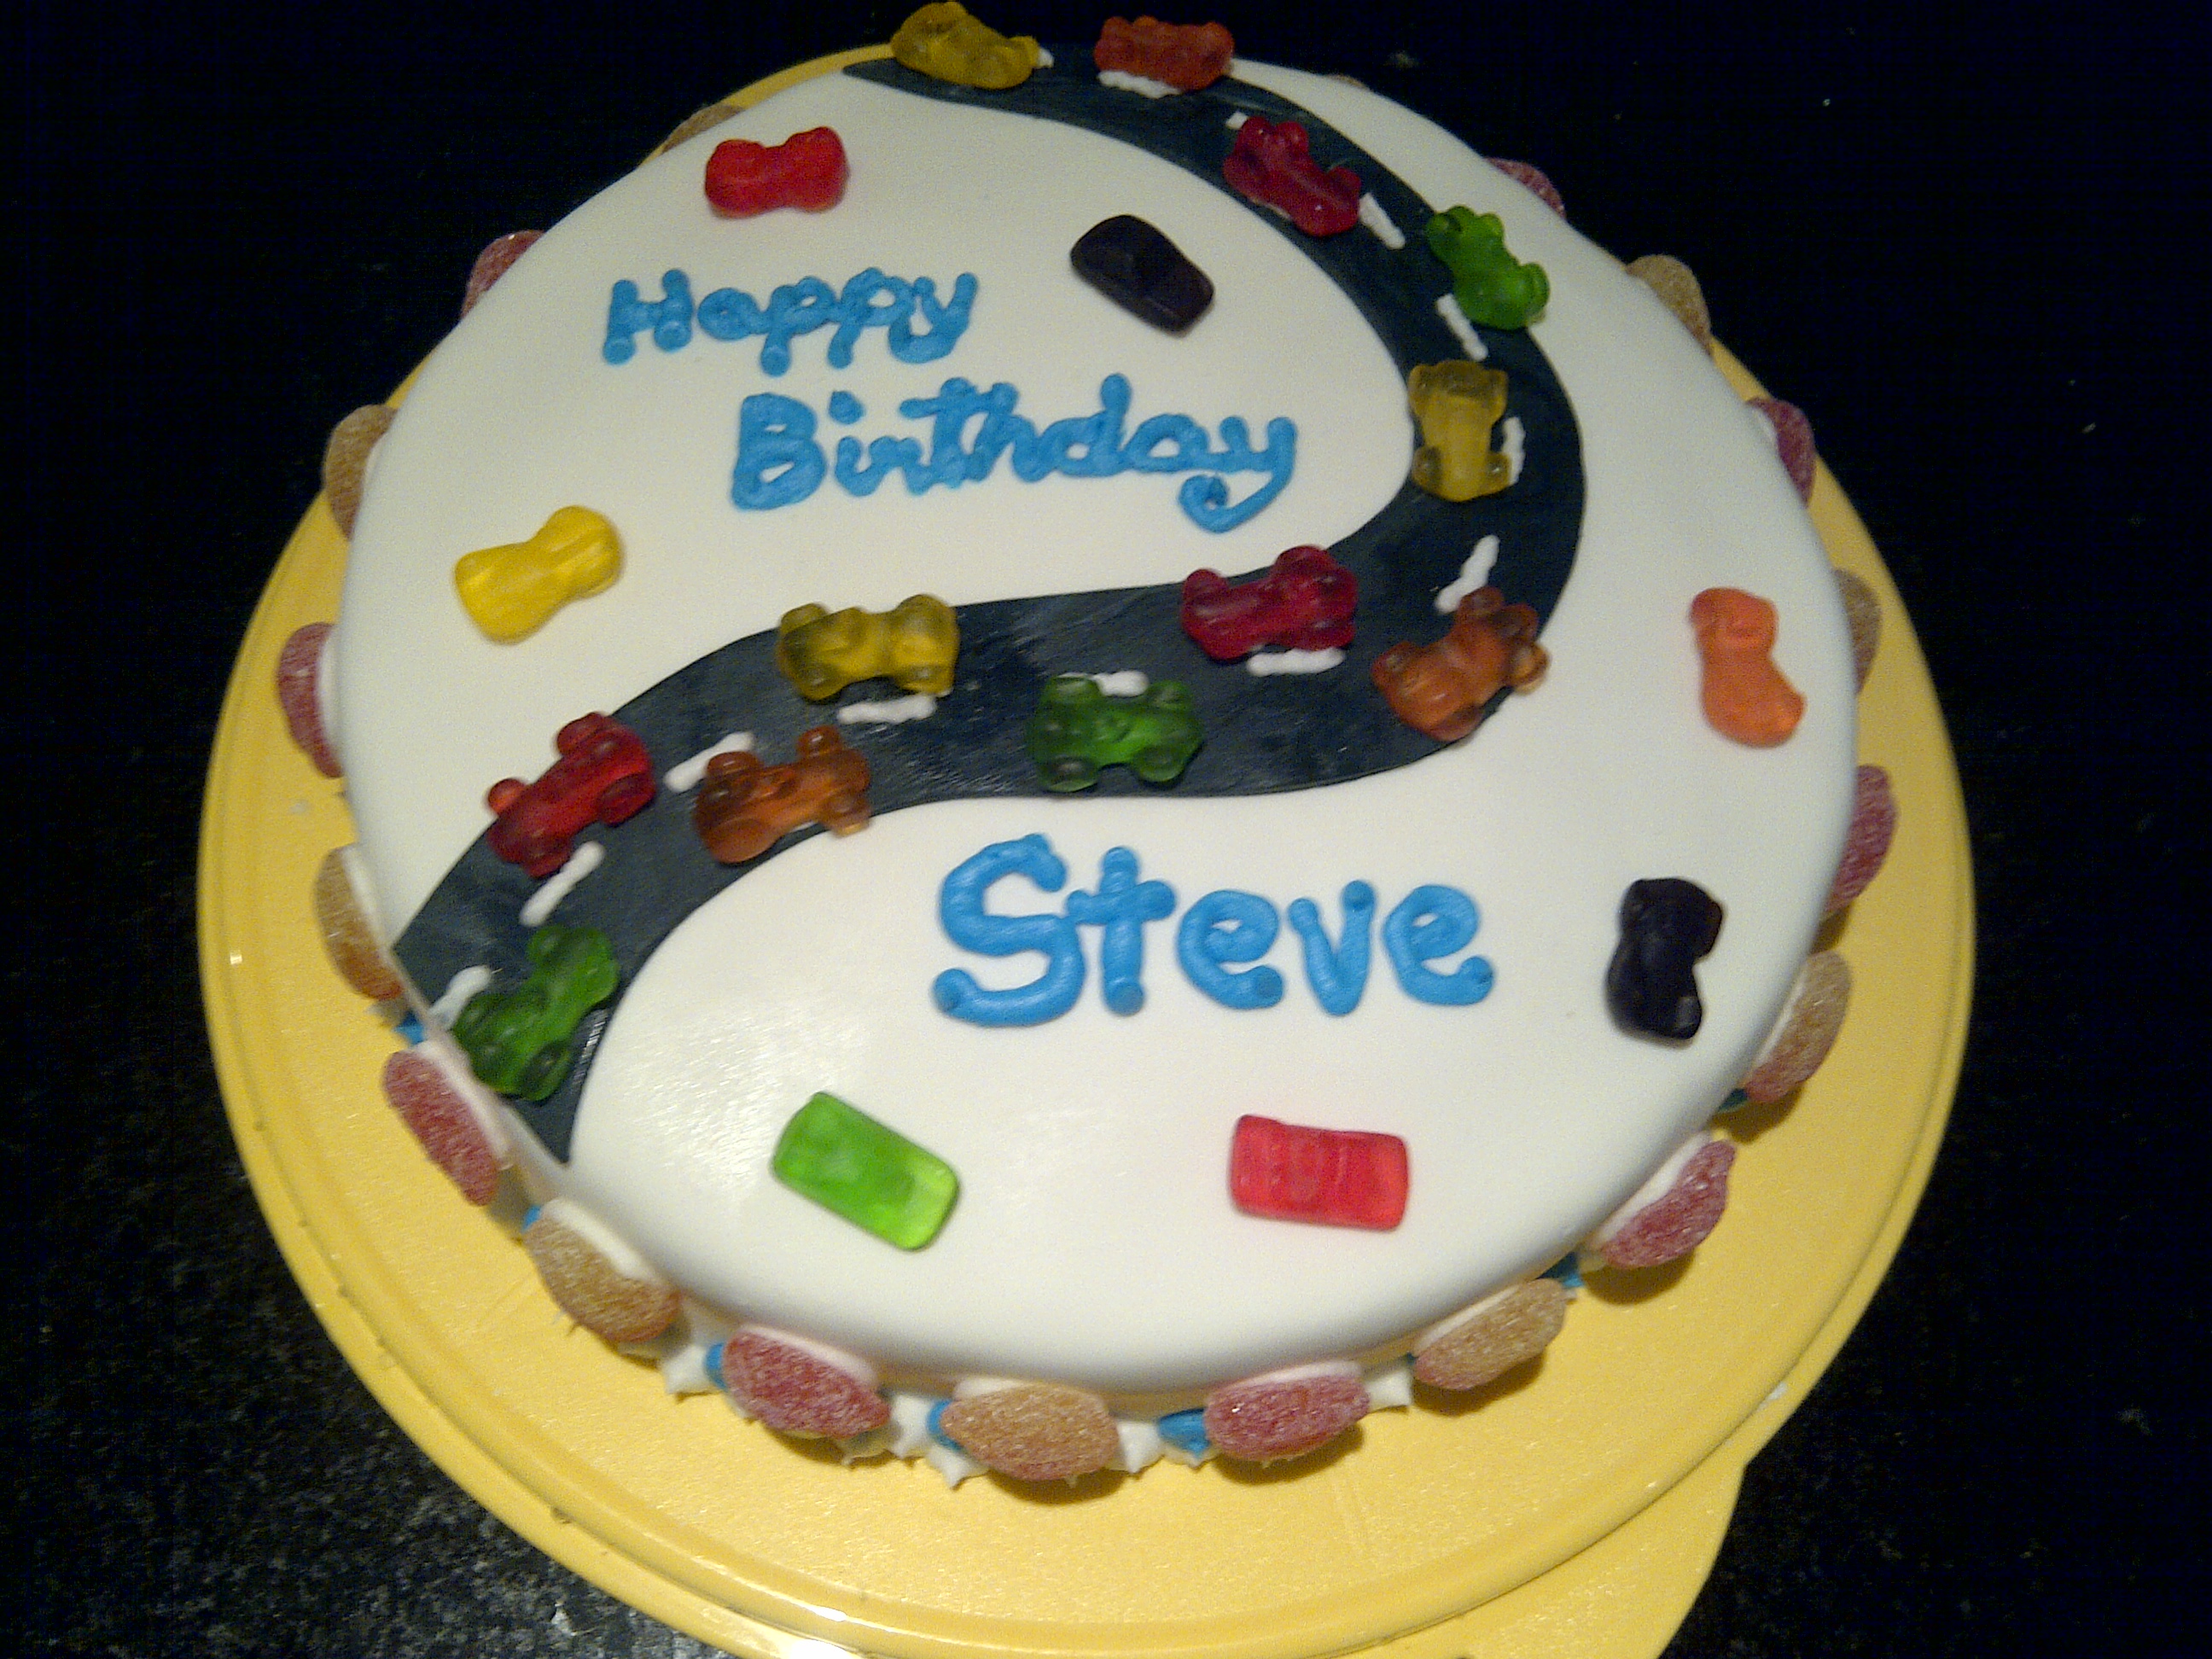 Steve Happy Birthday Cakes Pics Gallery